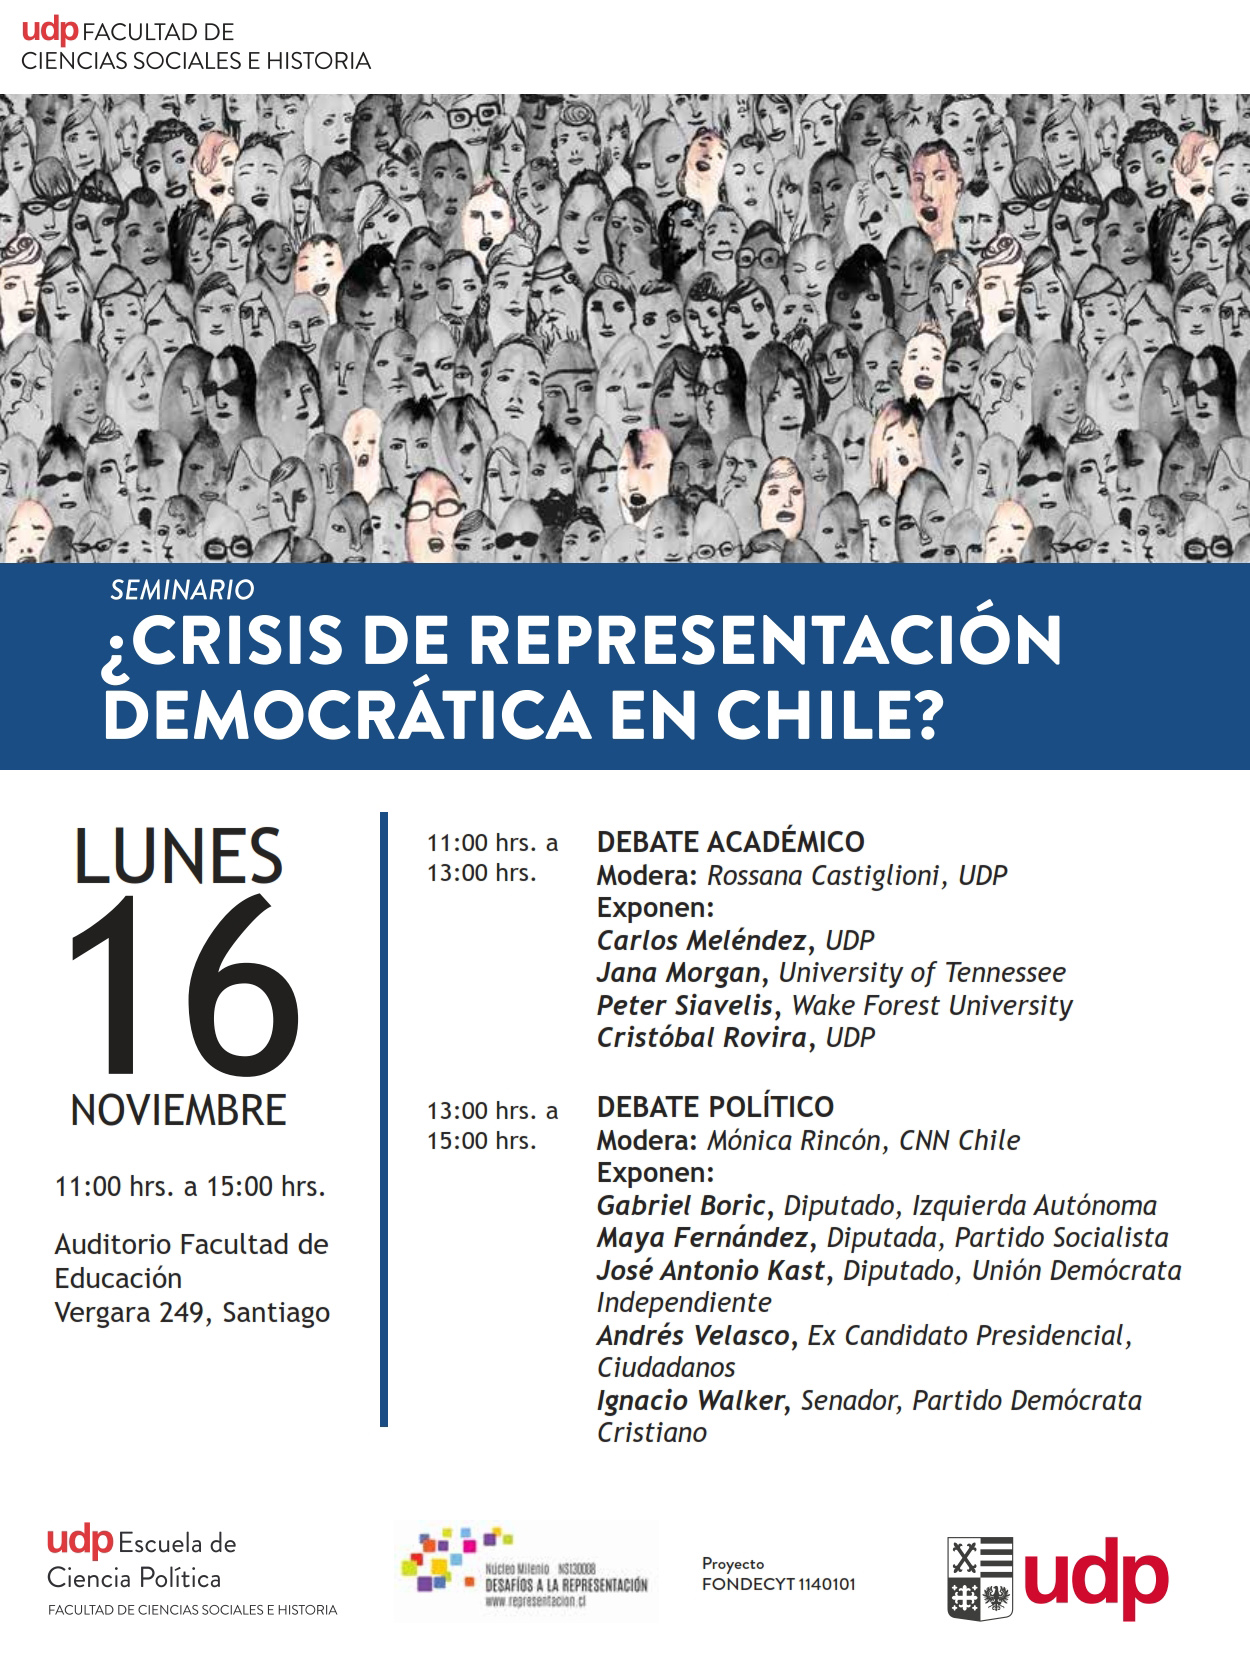 Mailing-Seminario-Crisis-de-Representacion-Democratica-en-Chile